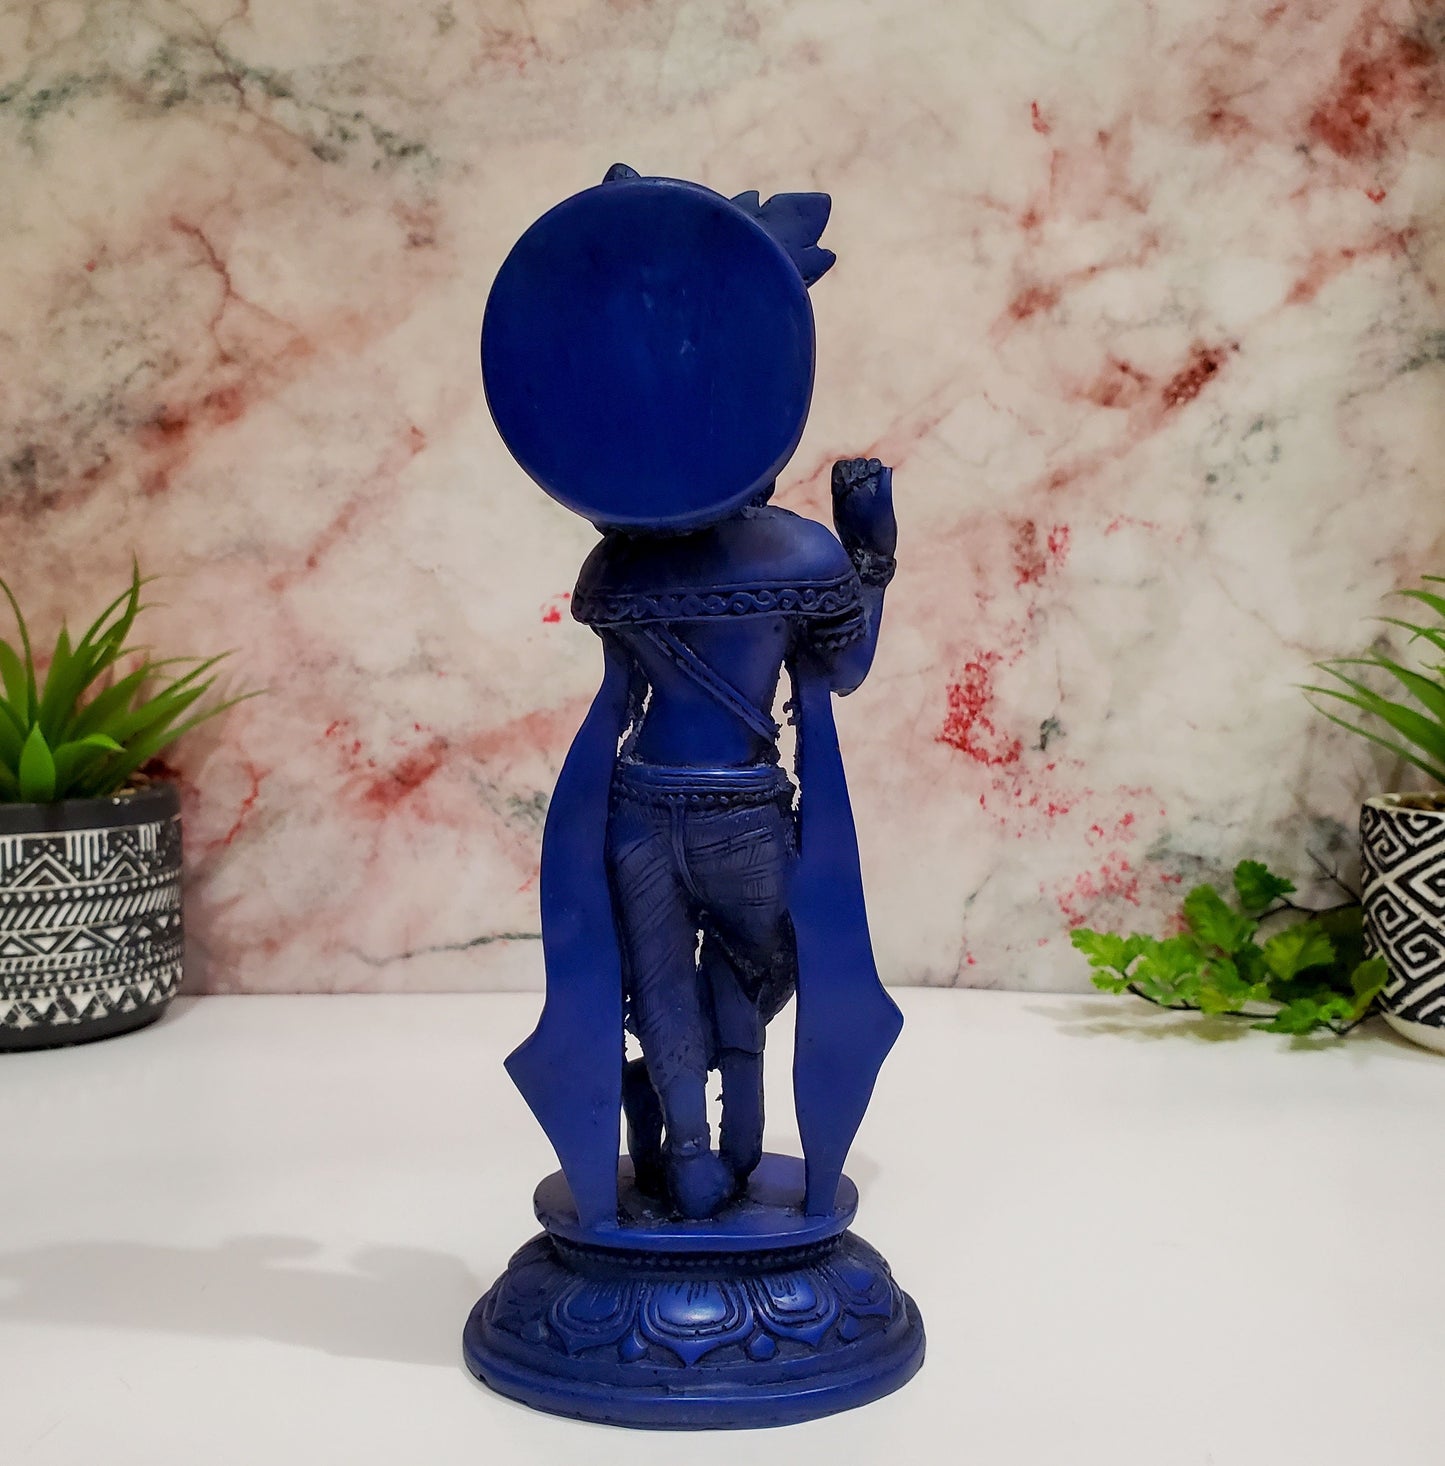 Blue Krishna Statue | Resin Cast Royal Blue Krishna Statue Figurine 9" Tall